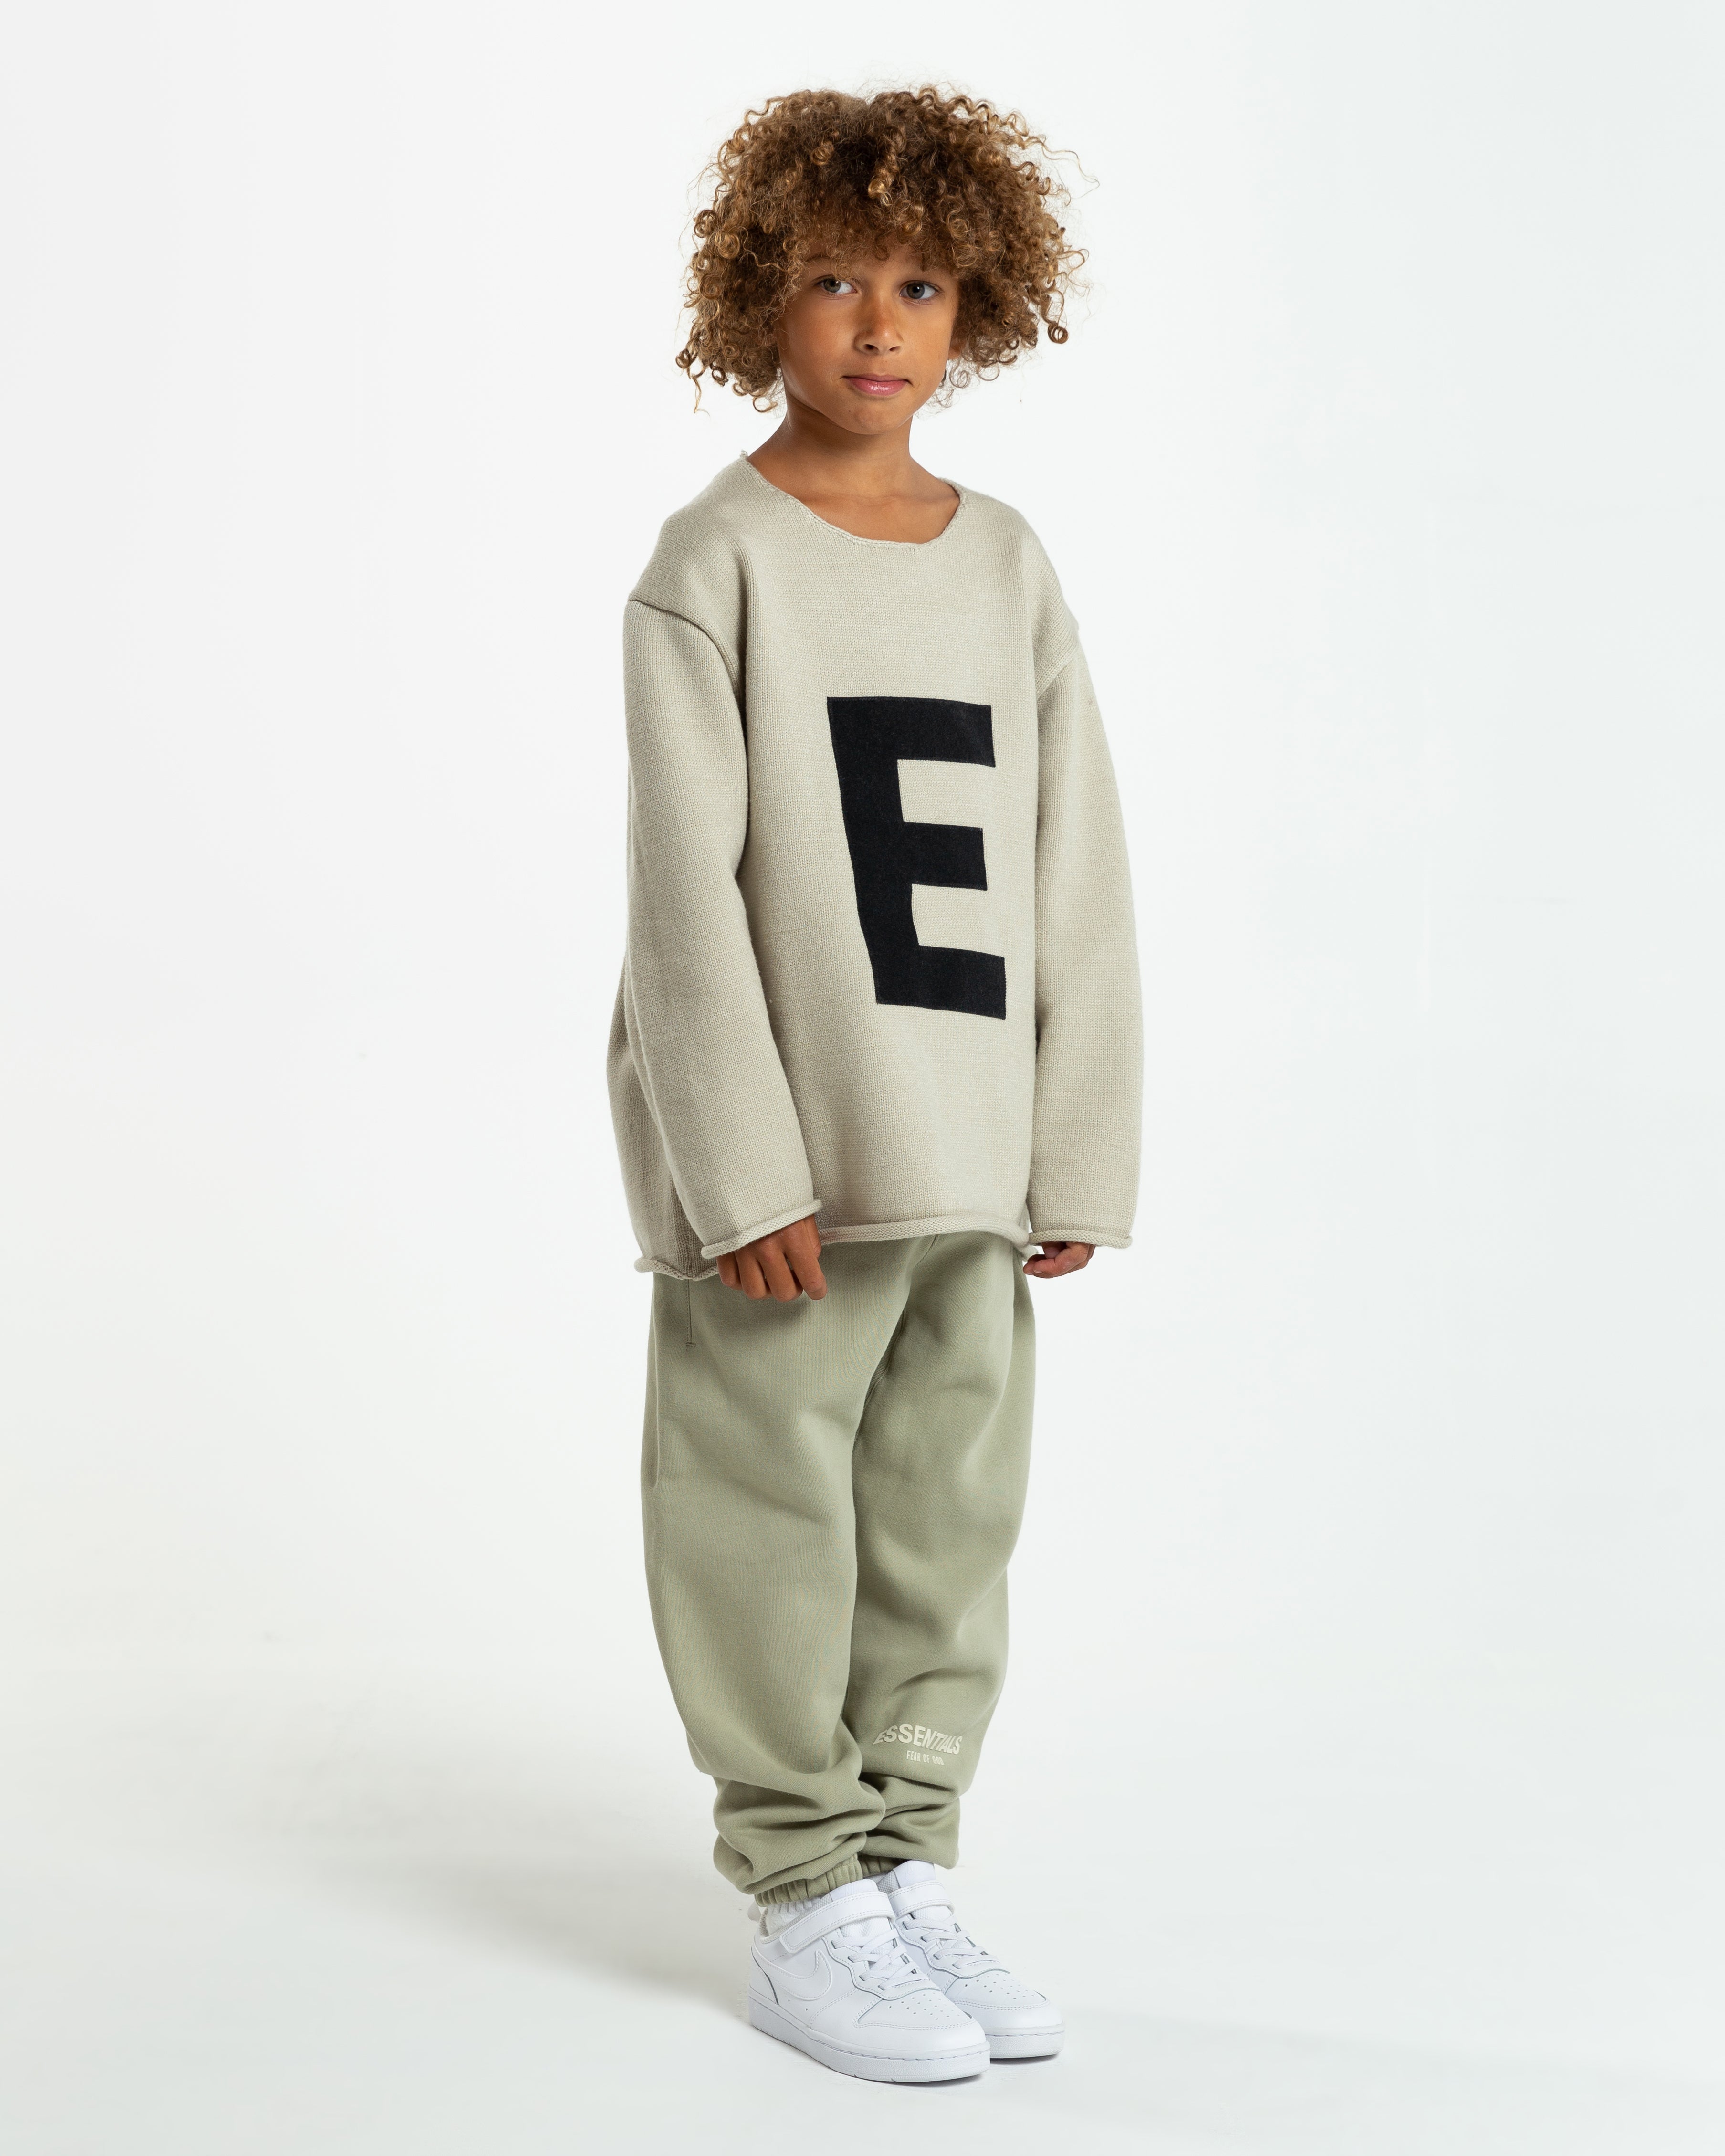 Kids' "Big E" Knit Sweater in Wheat